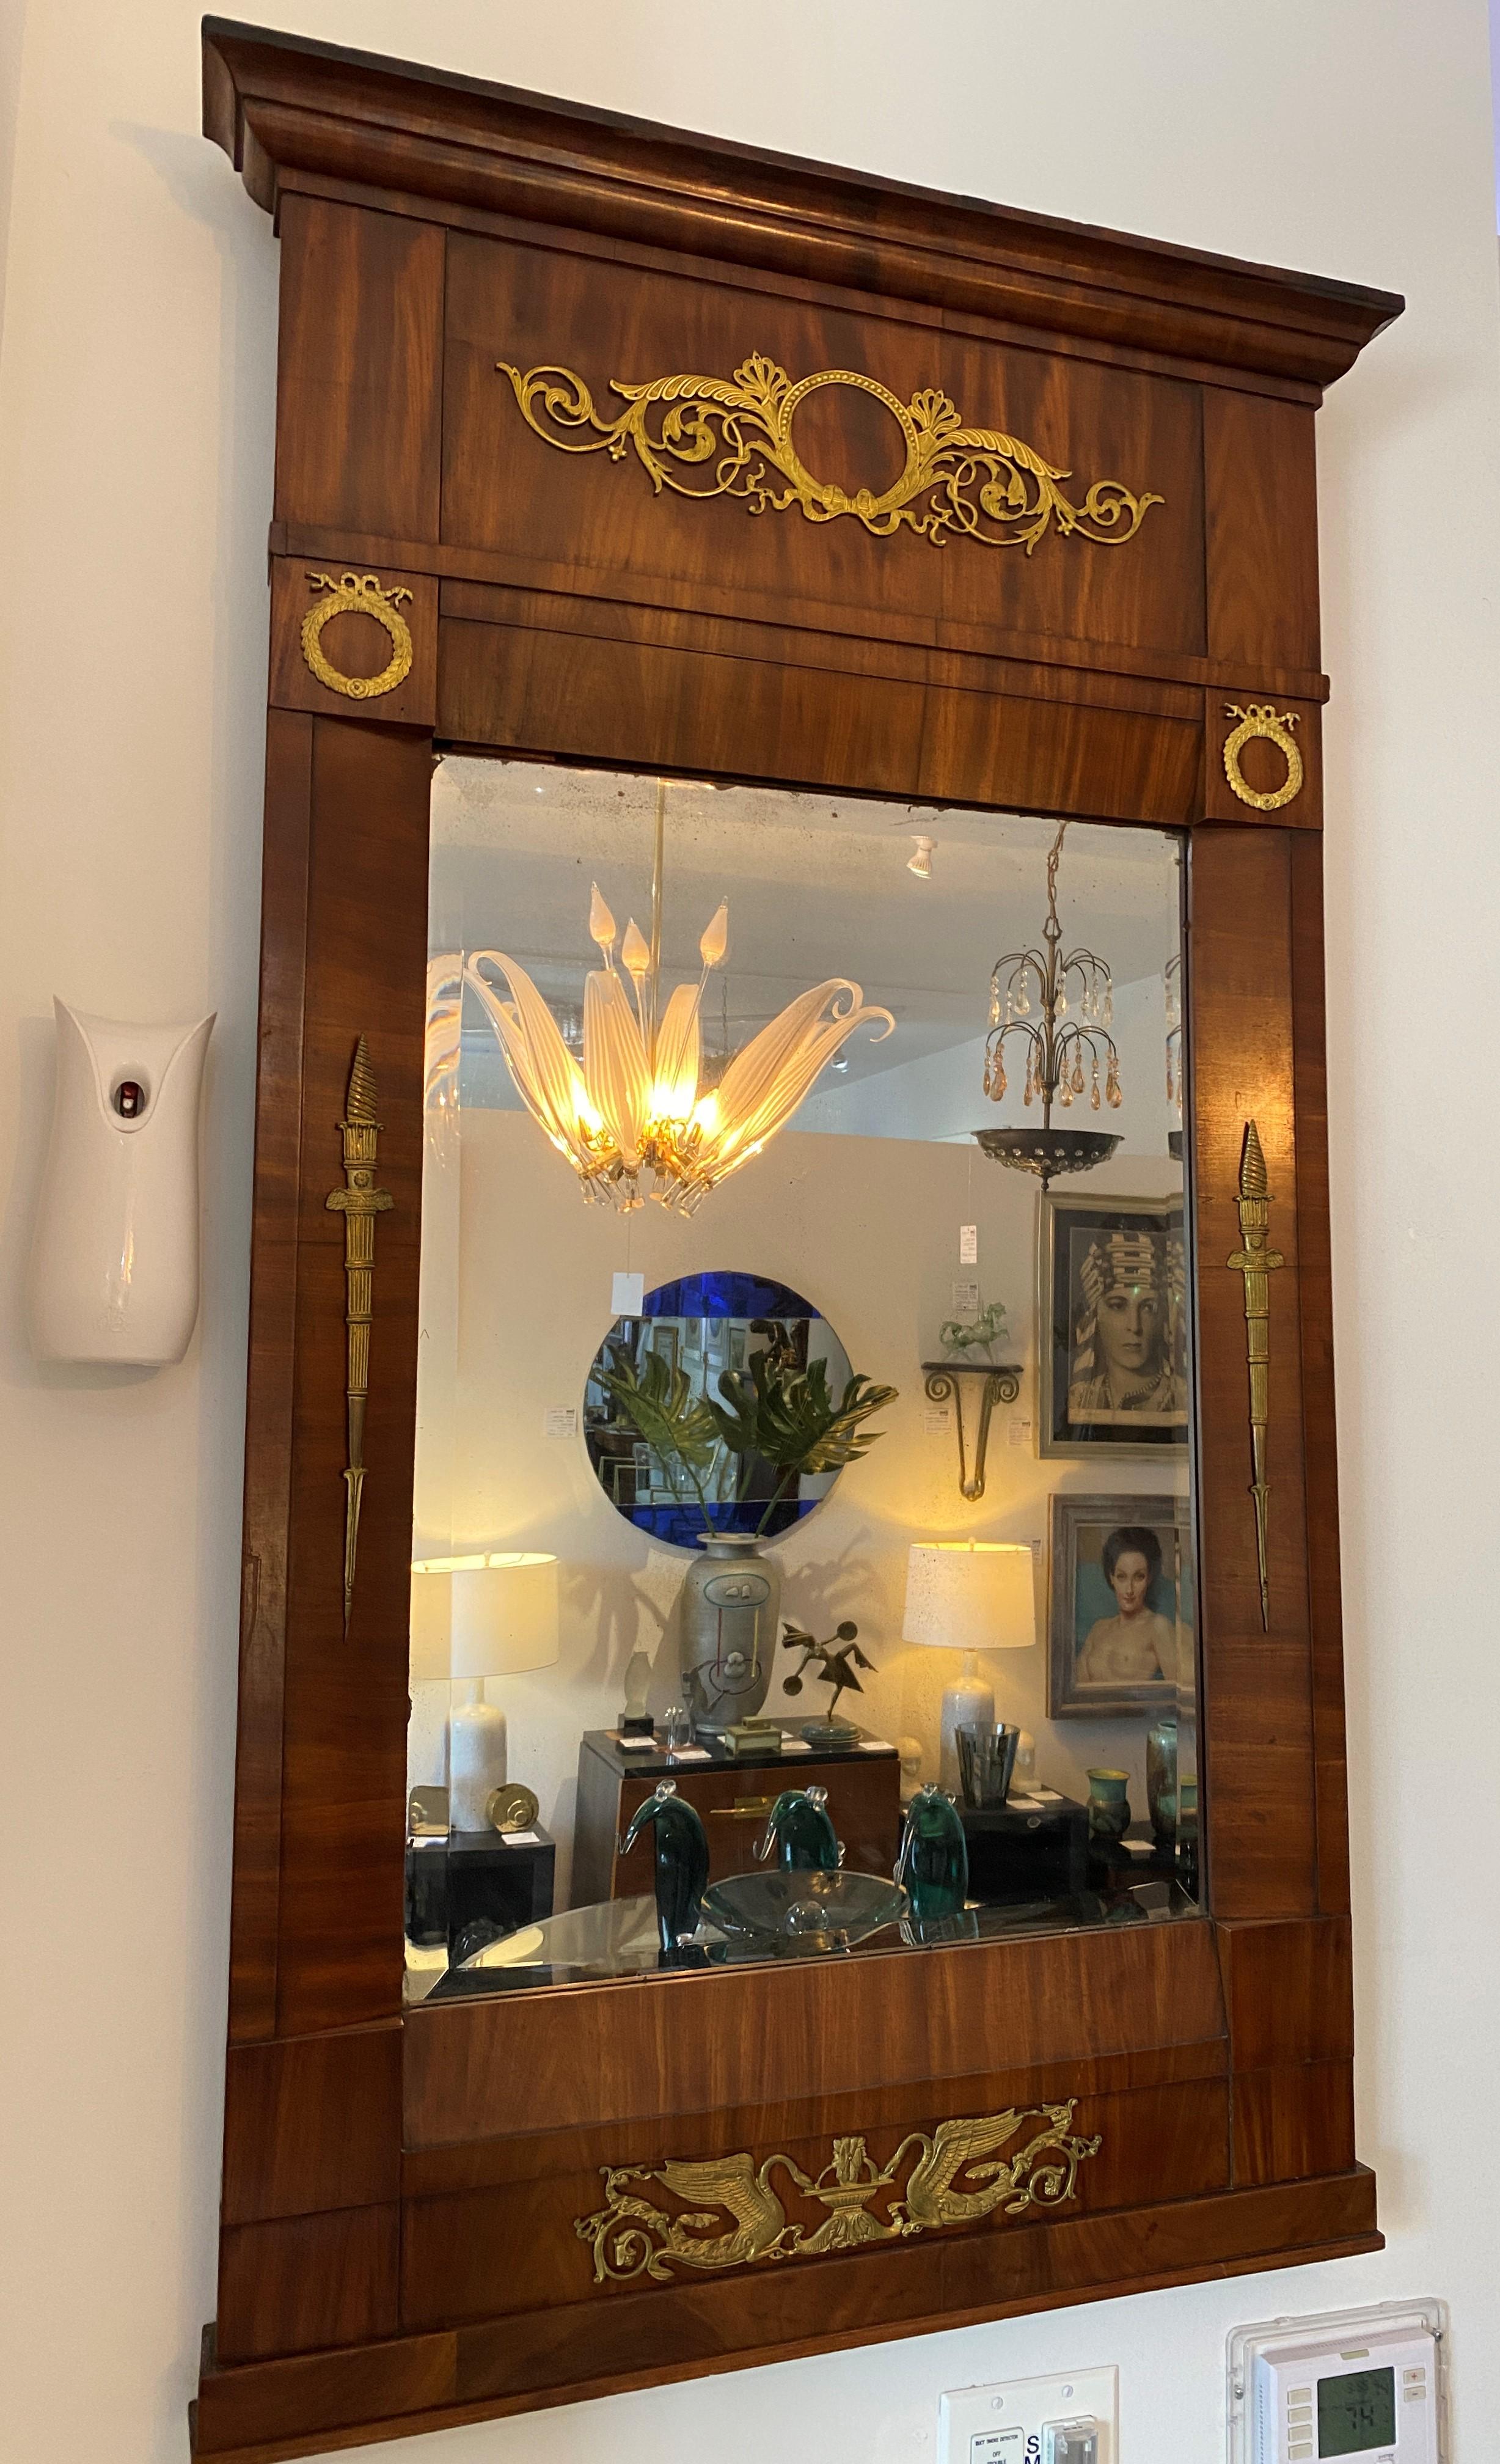 Ce miroir trumeau de style Empire français date des années 1810 et a été acquis dans une propriété d'Albany, dans l'État de New York.

Note : Conserve son miroir d'origine.